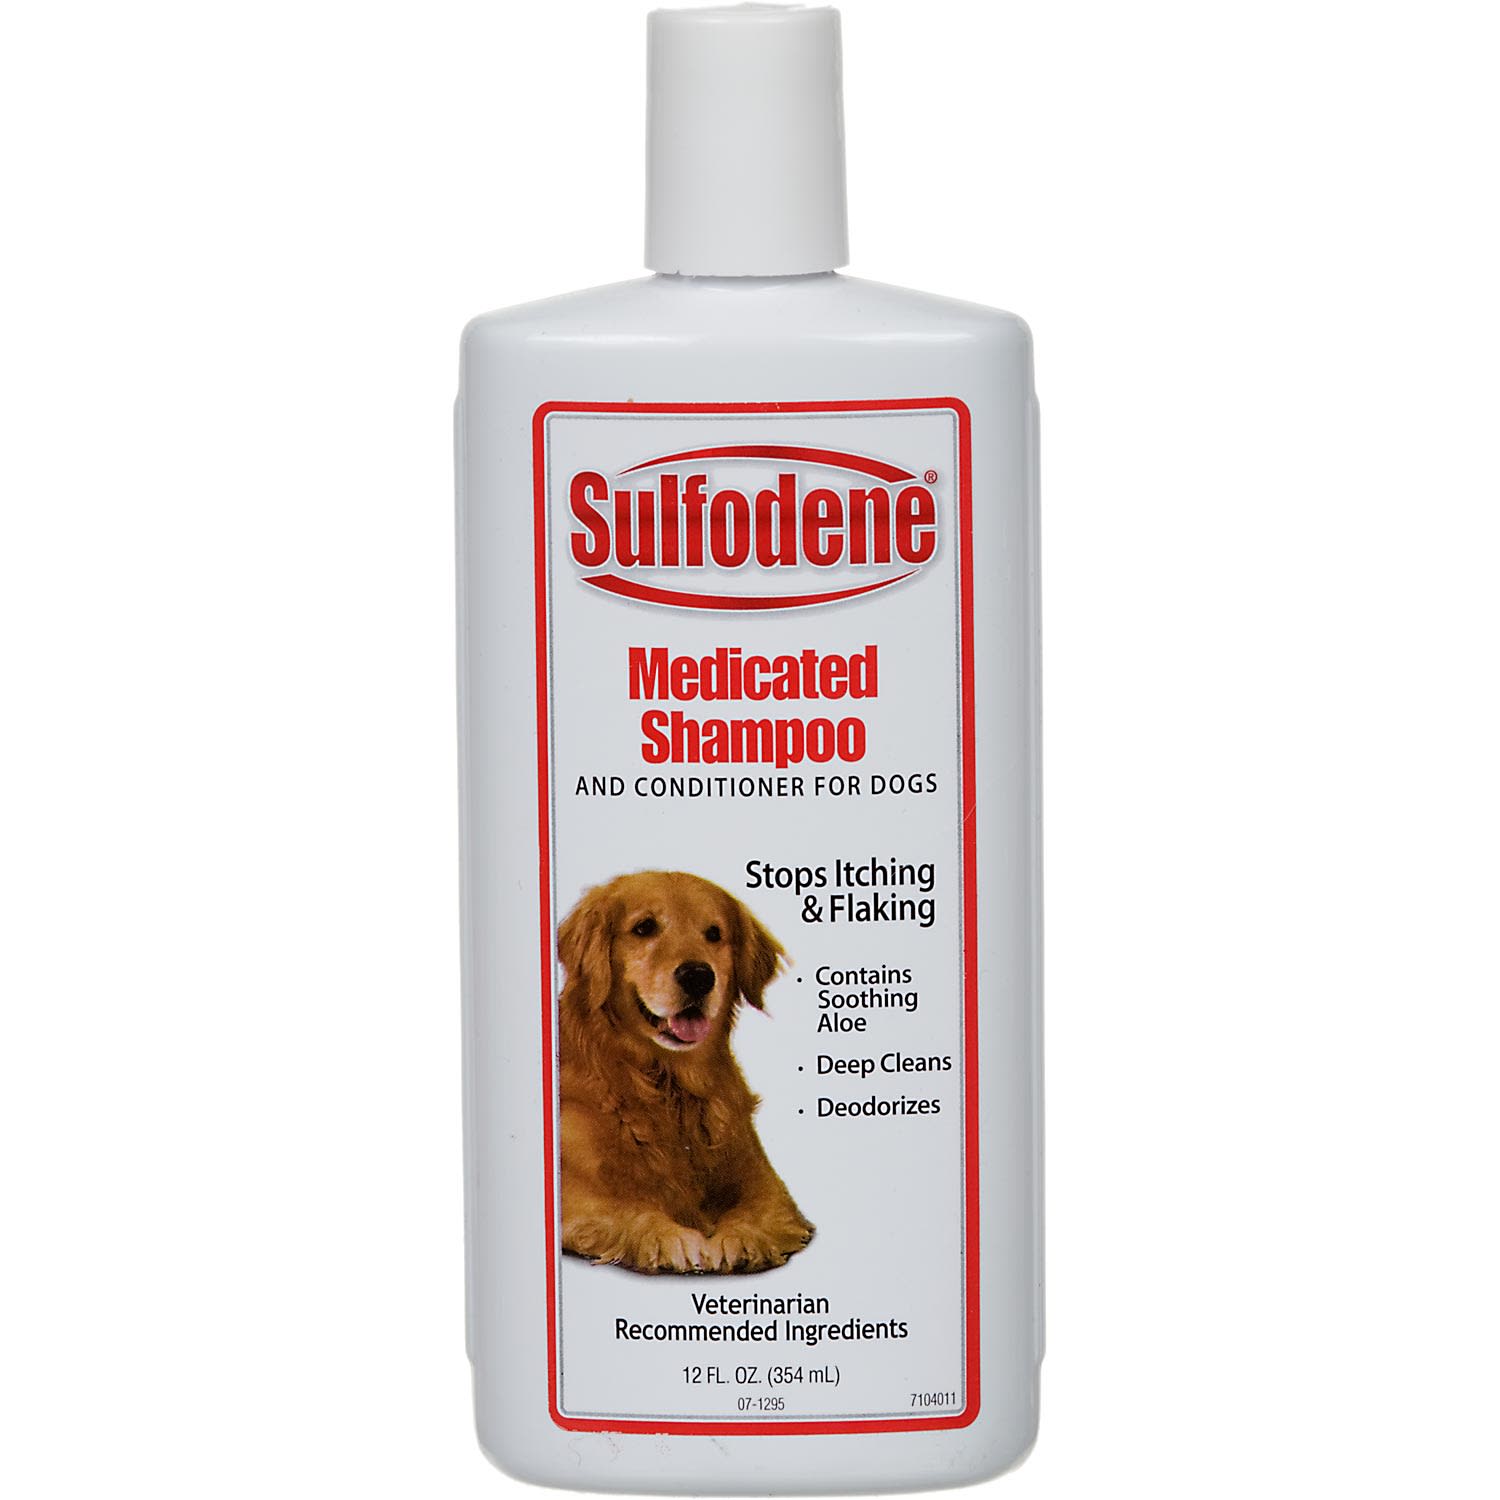 sulfodene dog shampoo